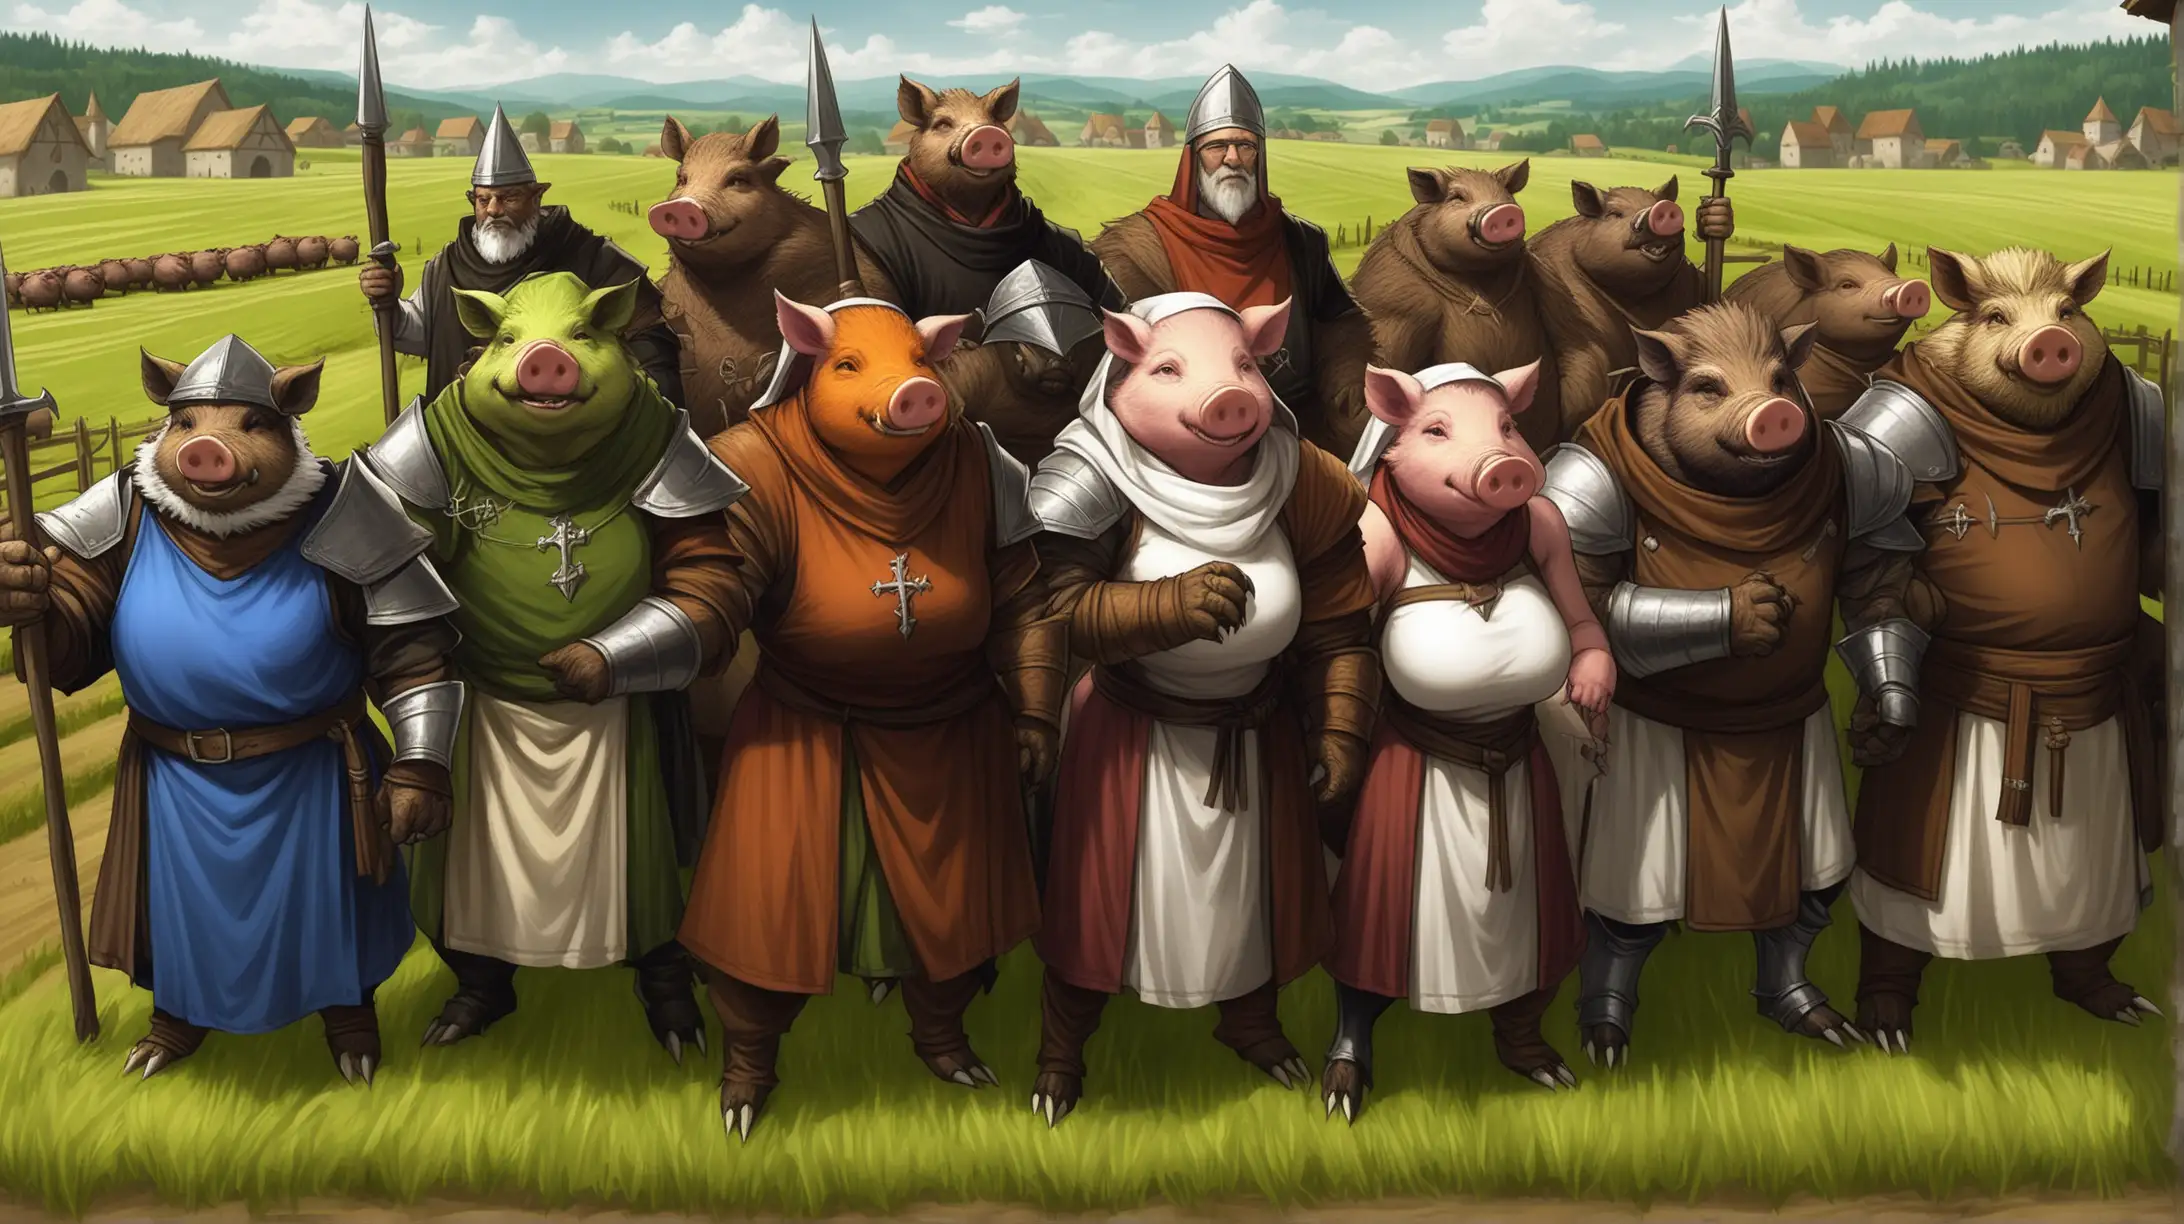 hybrid boar men, hybrid boar women, warriors, clerics, furry, farmland, Medieval fantasy